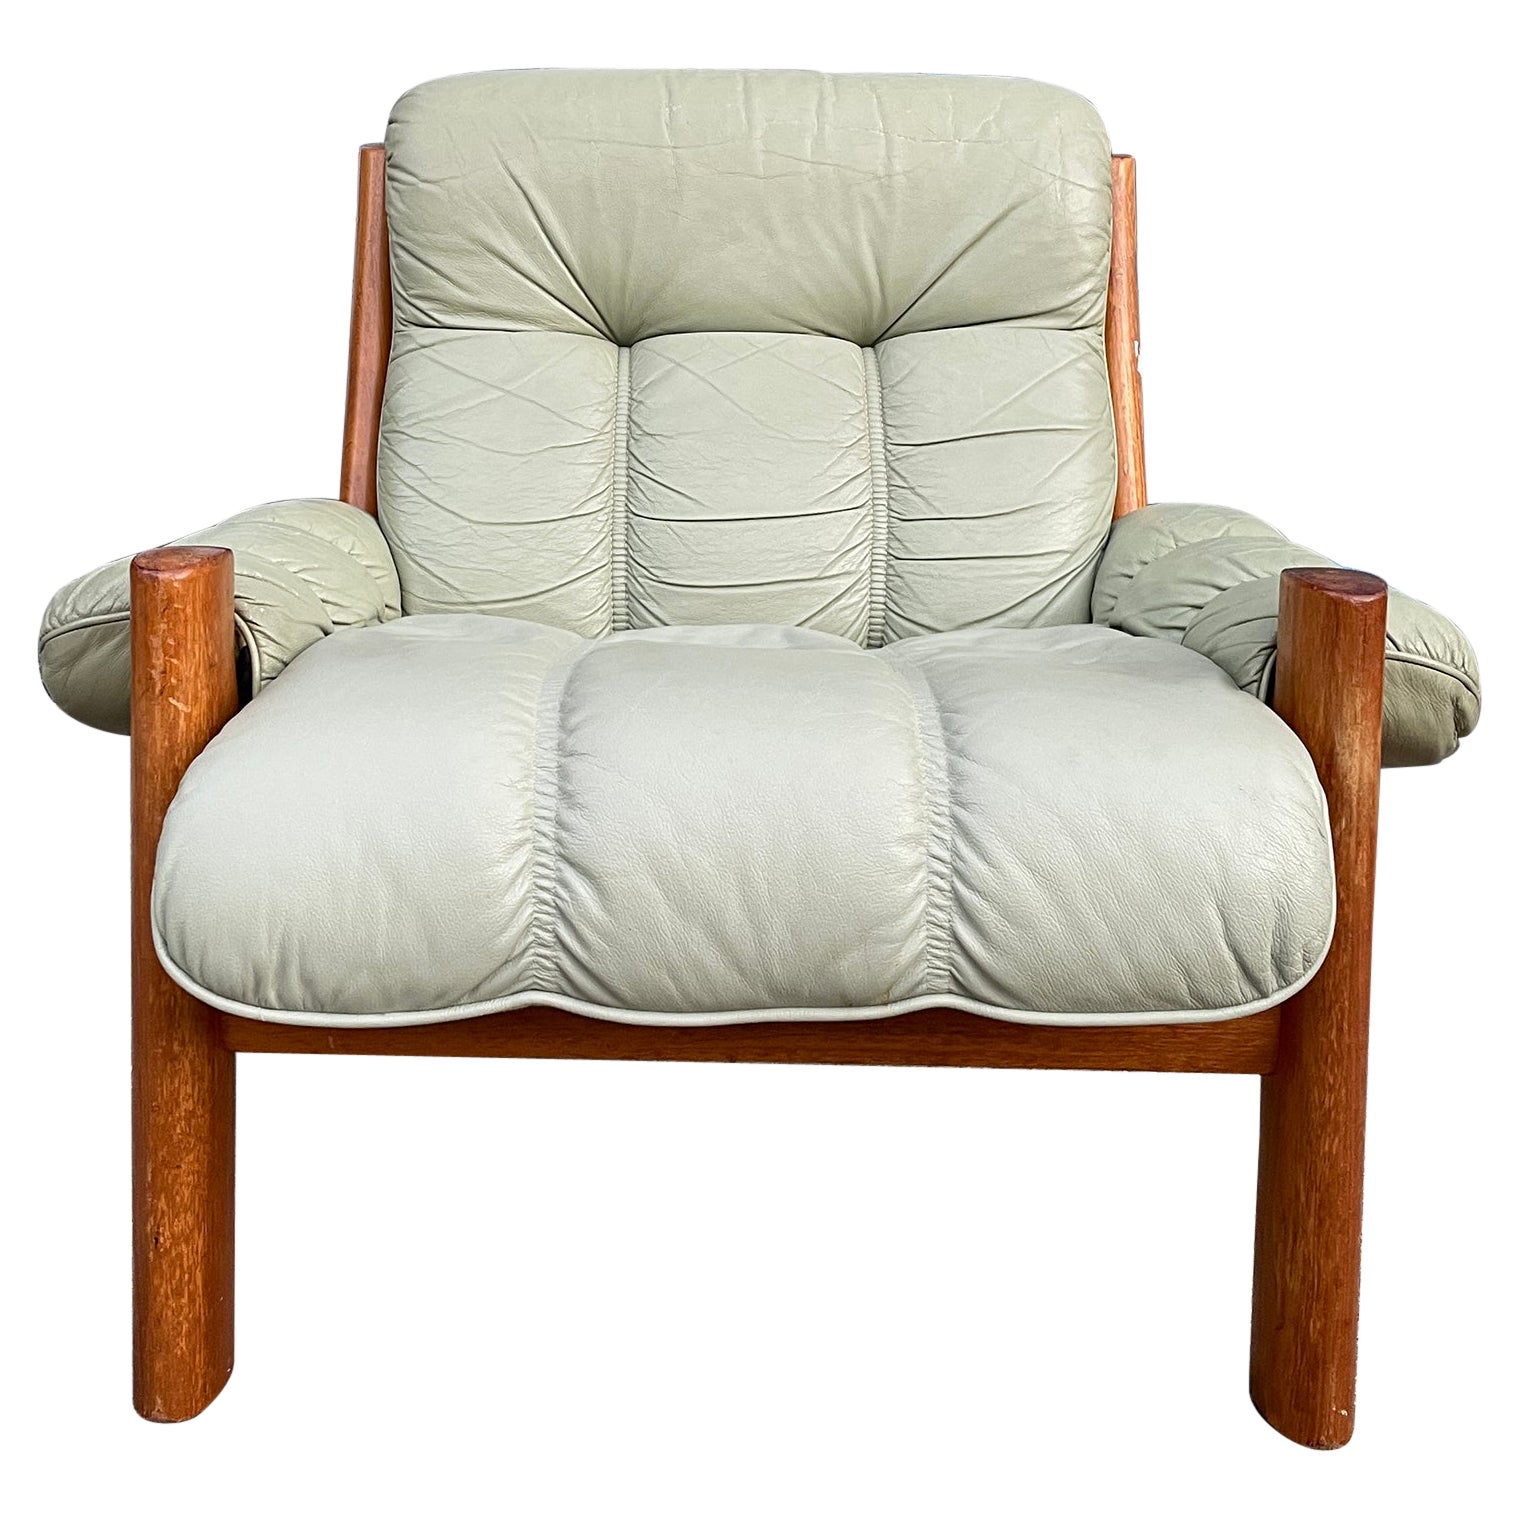 Midcentury Norwegian Modern Ekornes Leather Teak Lounge Chair